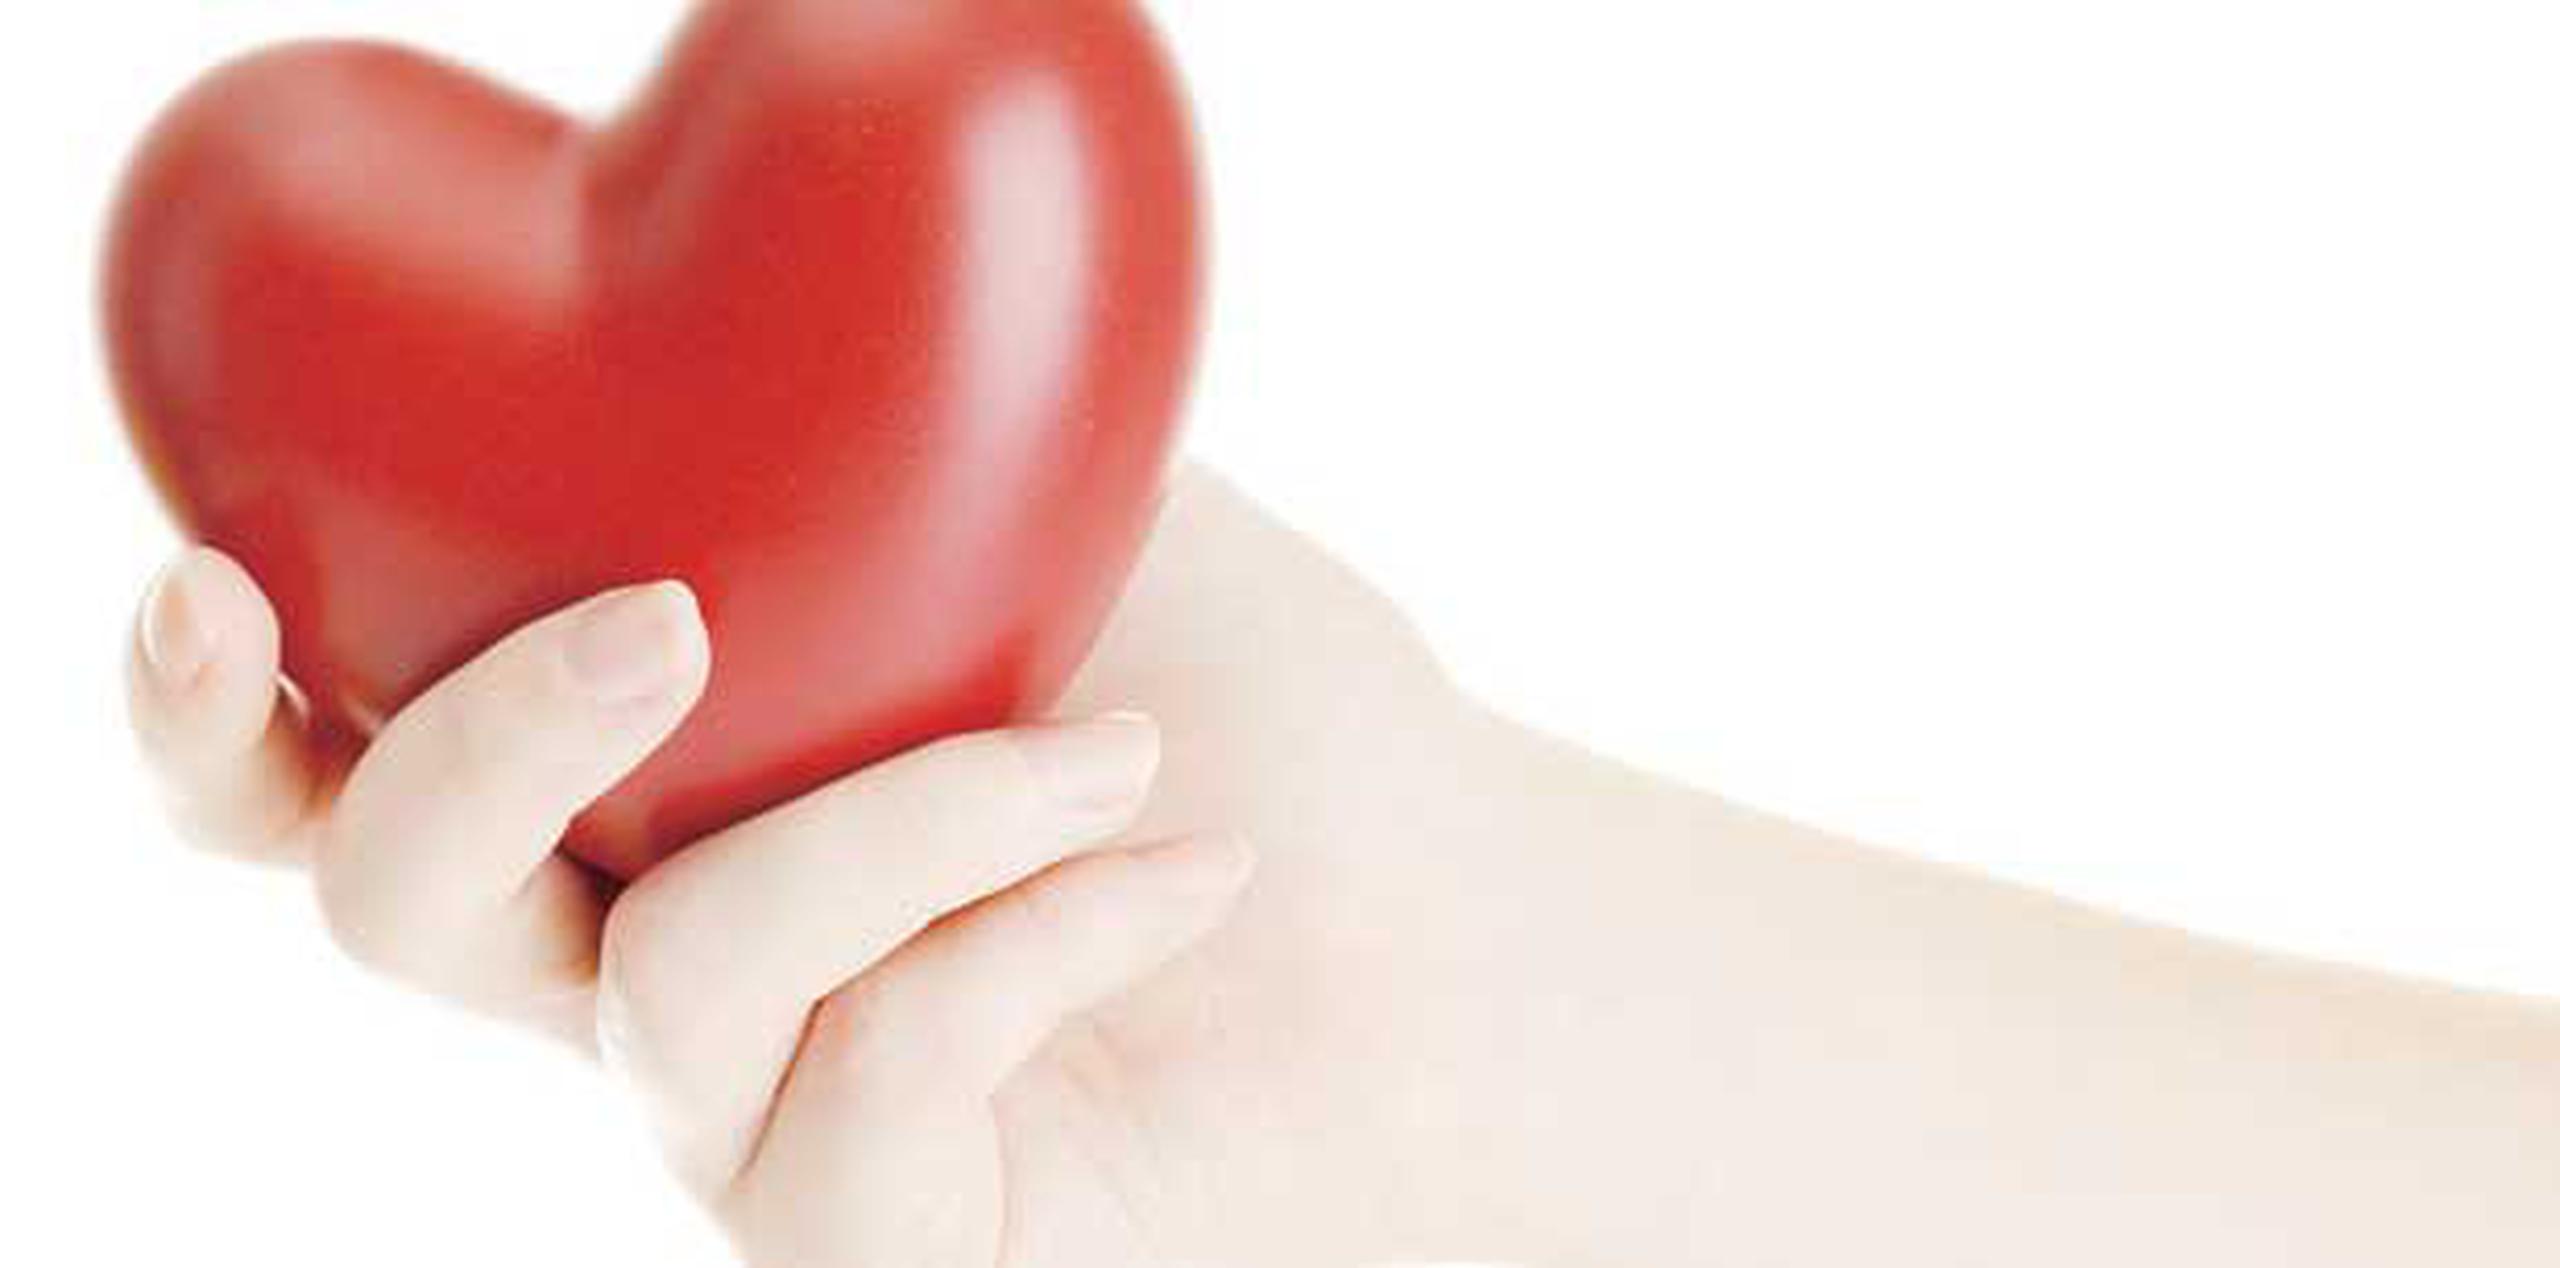 Las enfermedades cardiacas son la principal causa de muerte entre hombres y mujeres. (Archivo)